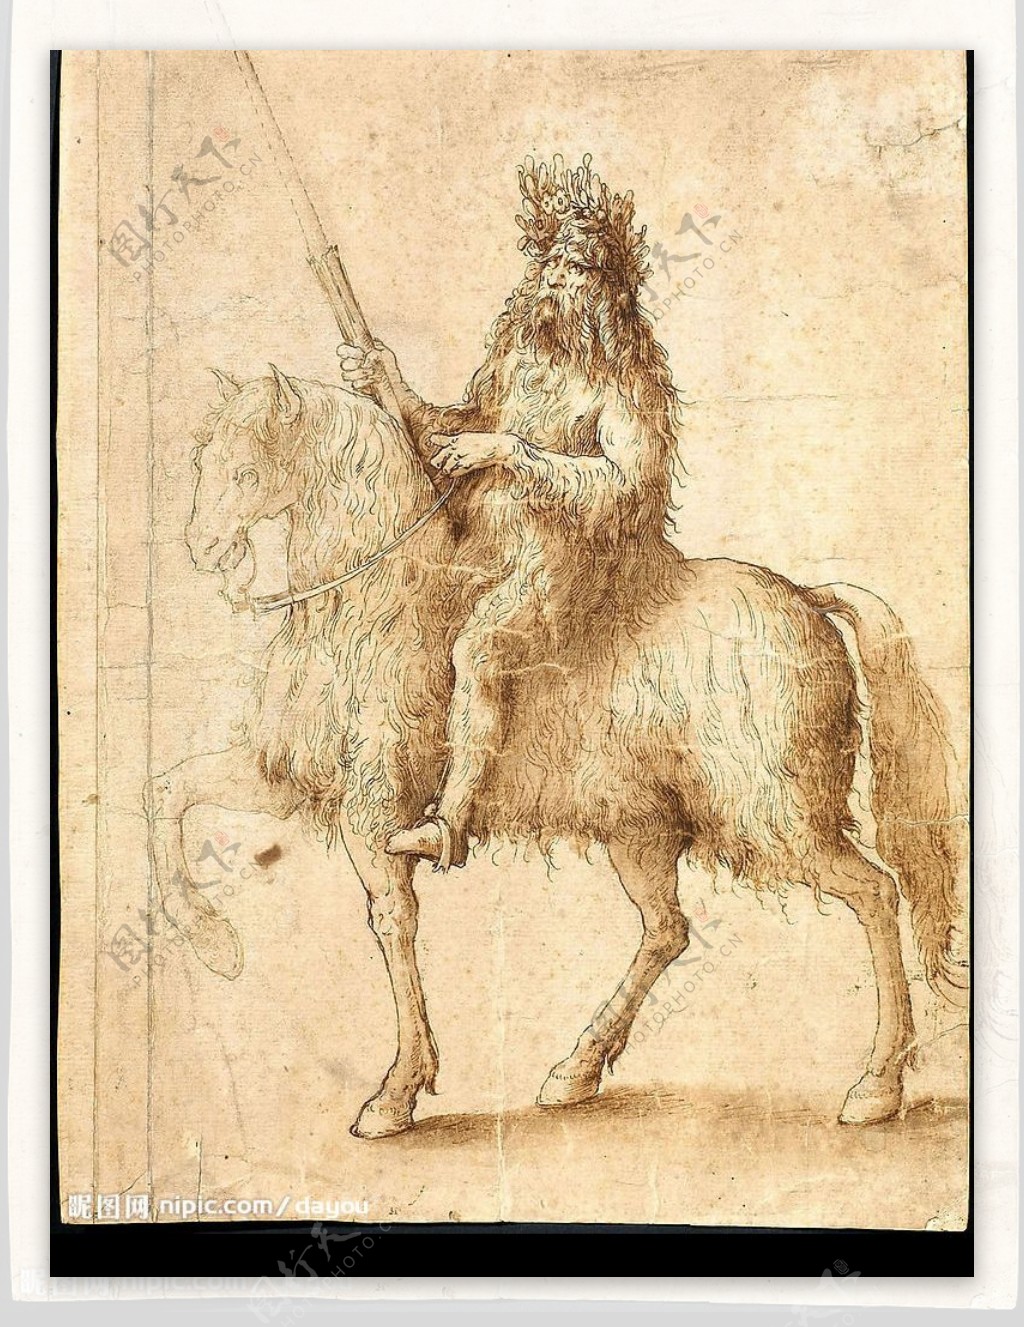 达芬奇素描画骑士15世纪图片